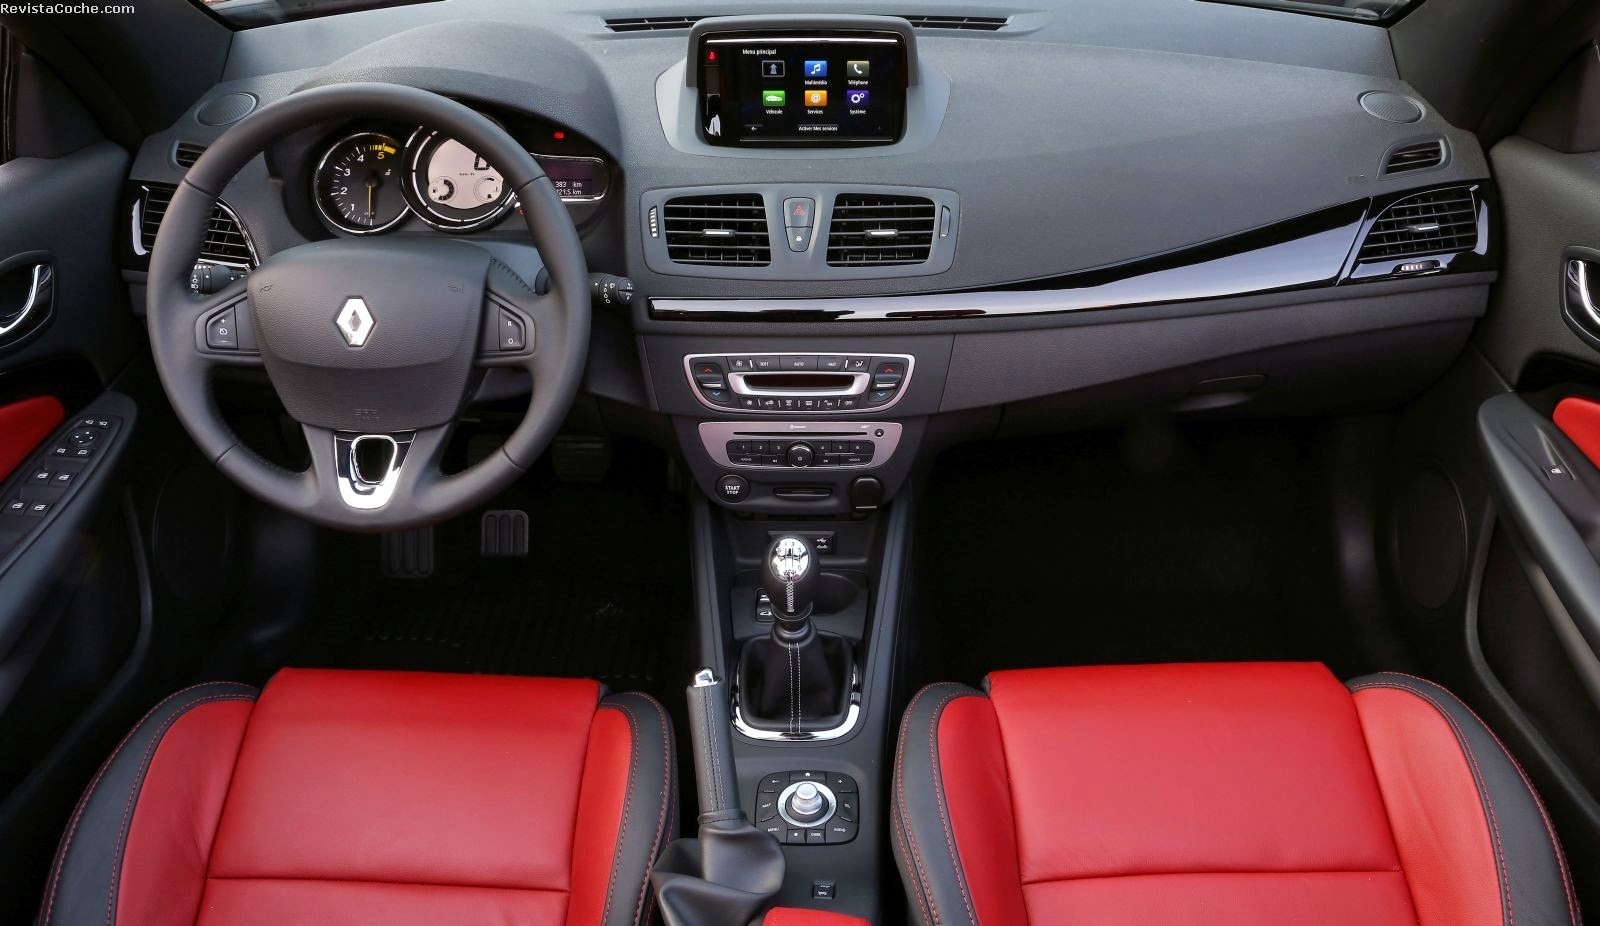 2015 Renault Megane Coupe-cabriolet Backgrounds, Compatible - PC, Mobile, Gadgets| 1600x926 px